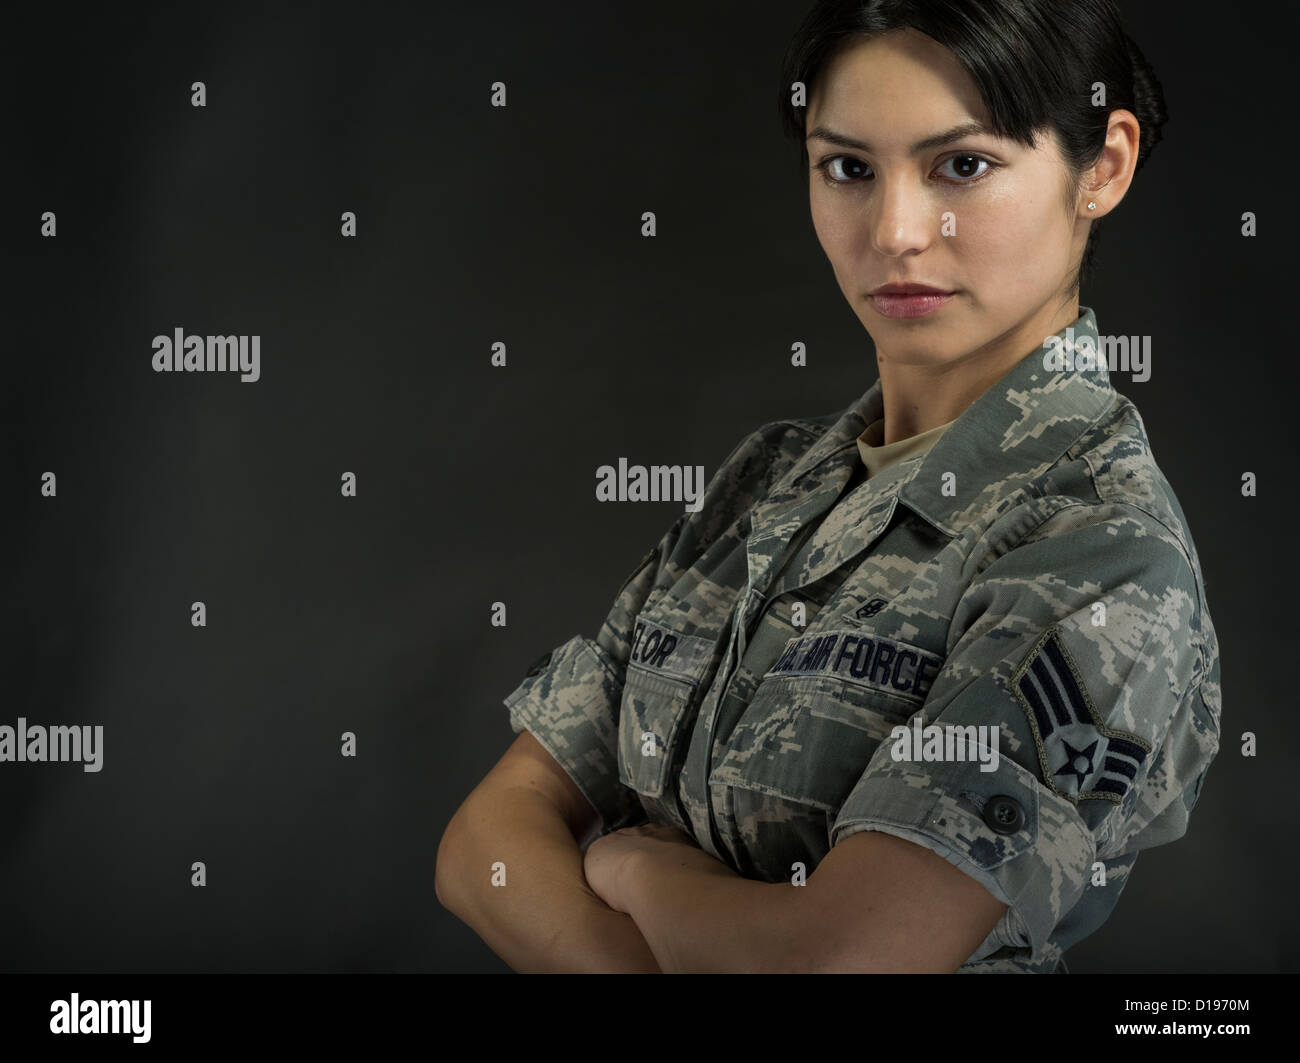 Mujeres soldado de infantería de marina de Estados Unidos en combate uniforme de utilidad Foto de stock